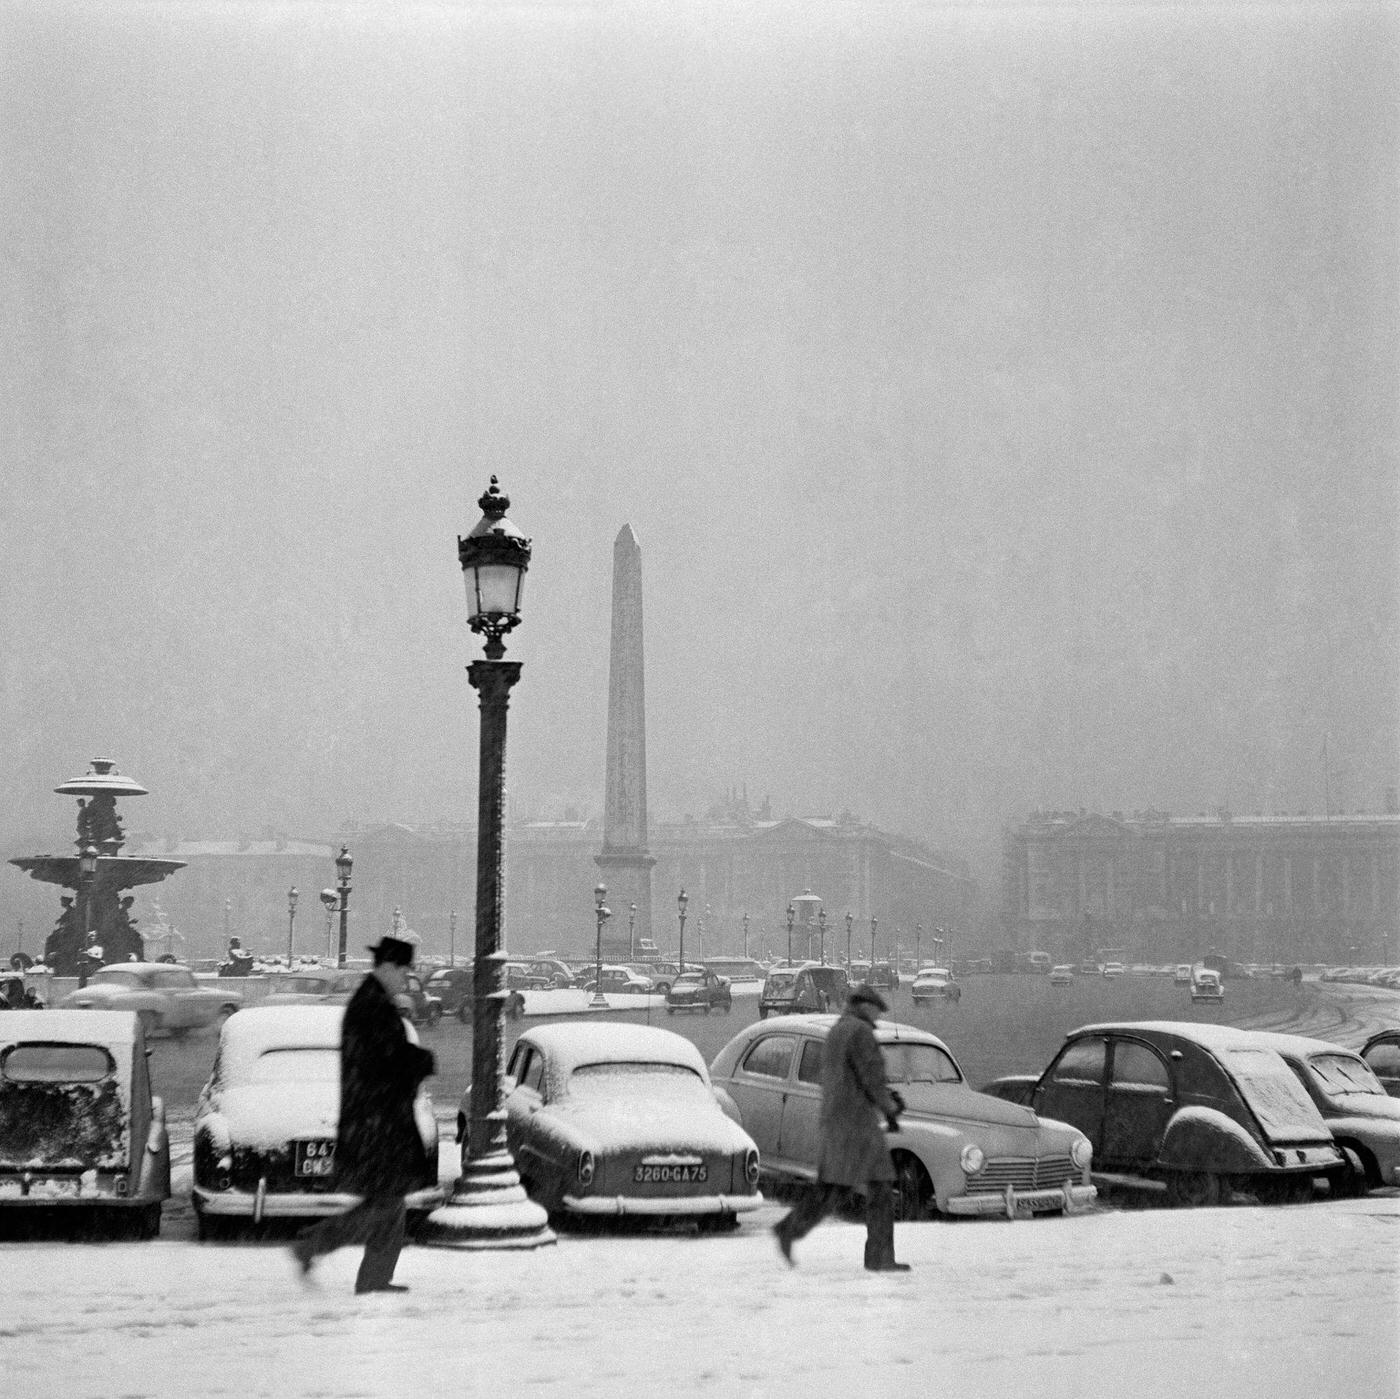 Snowy Day At Place de la Concorde, Paris, February 7, 1958.